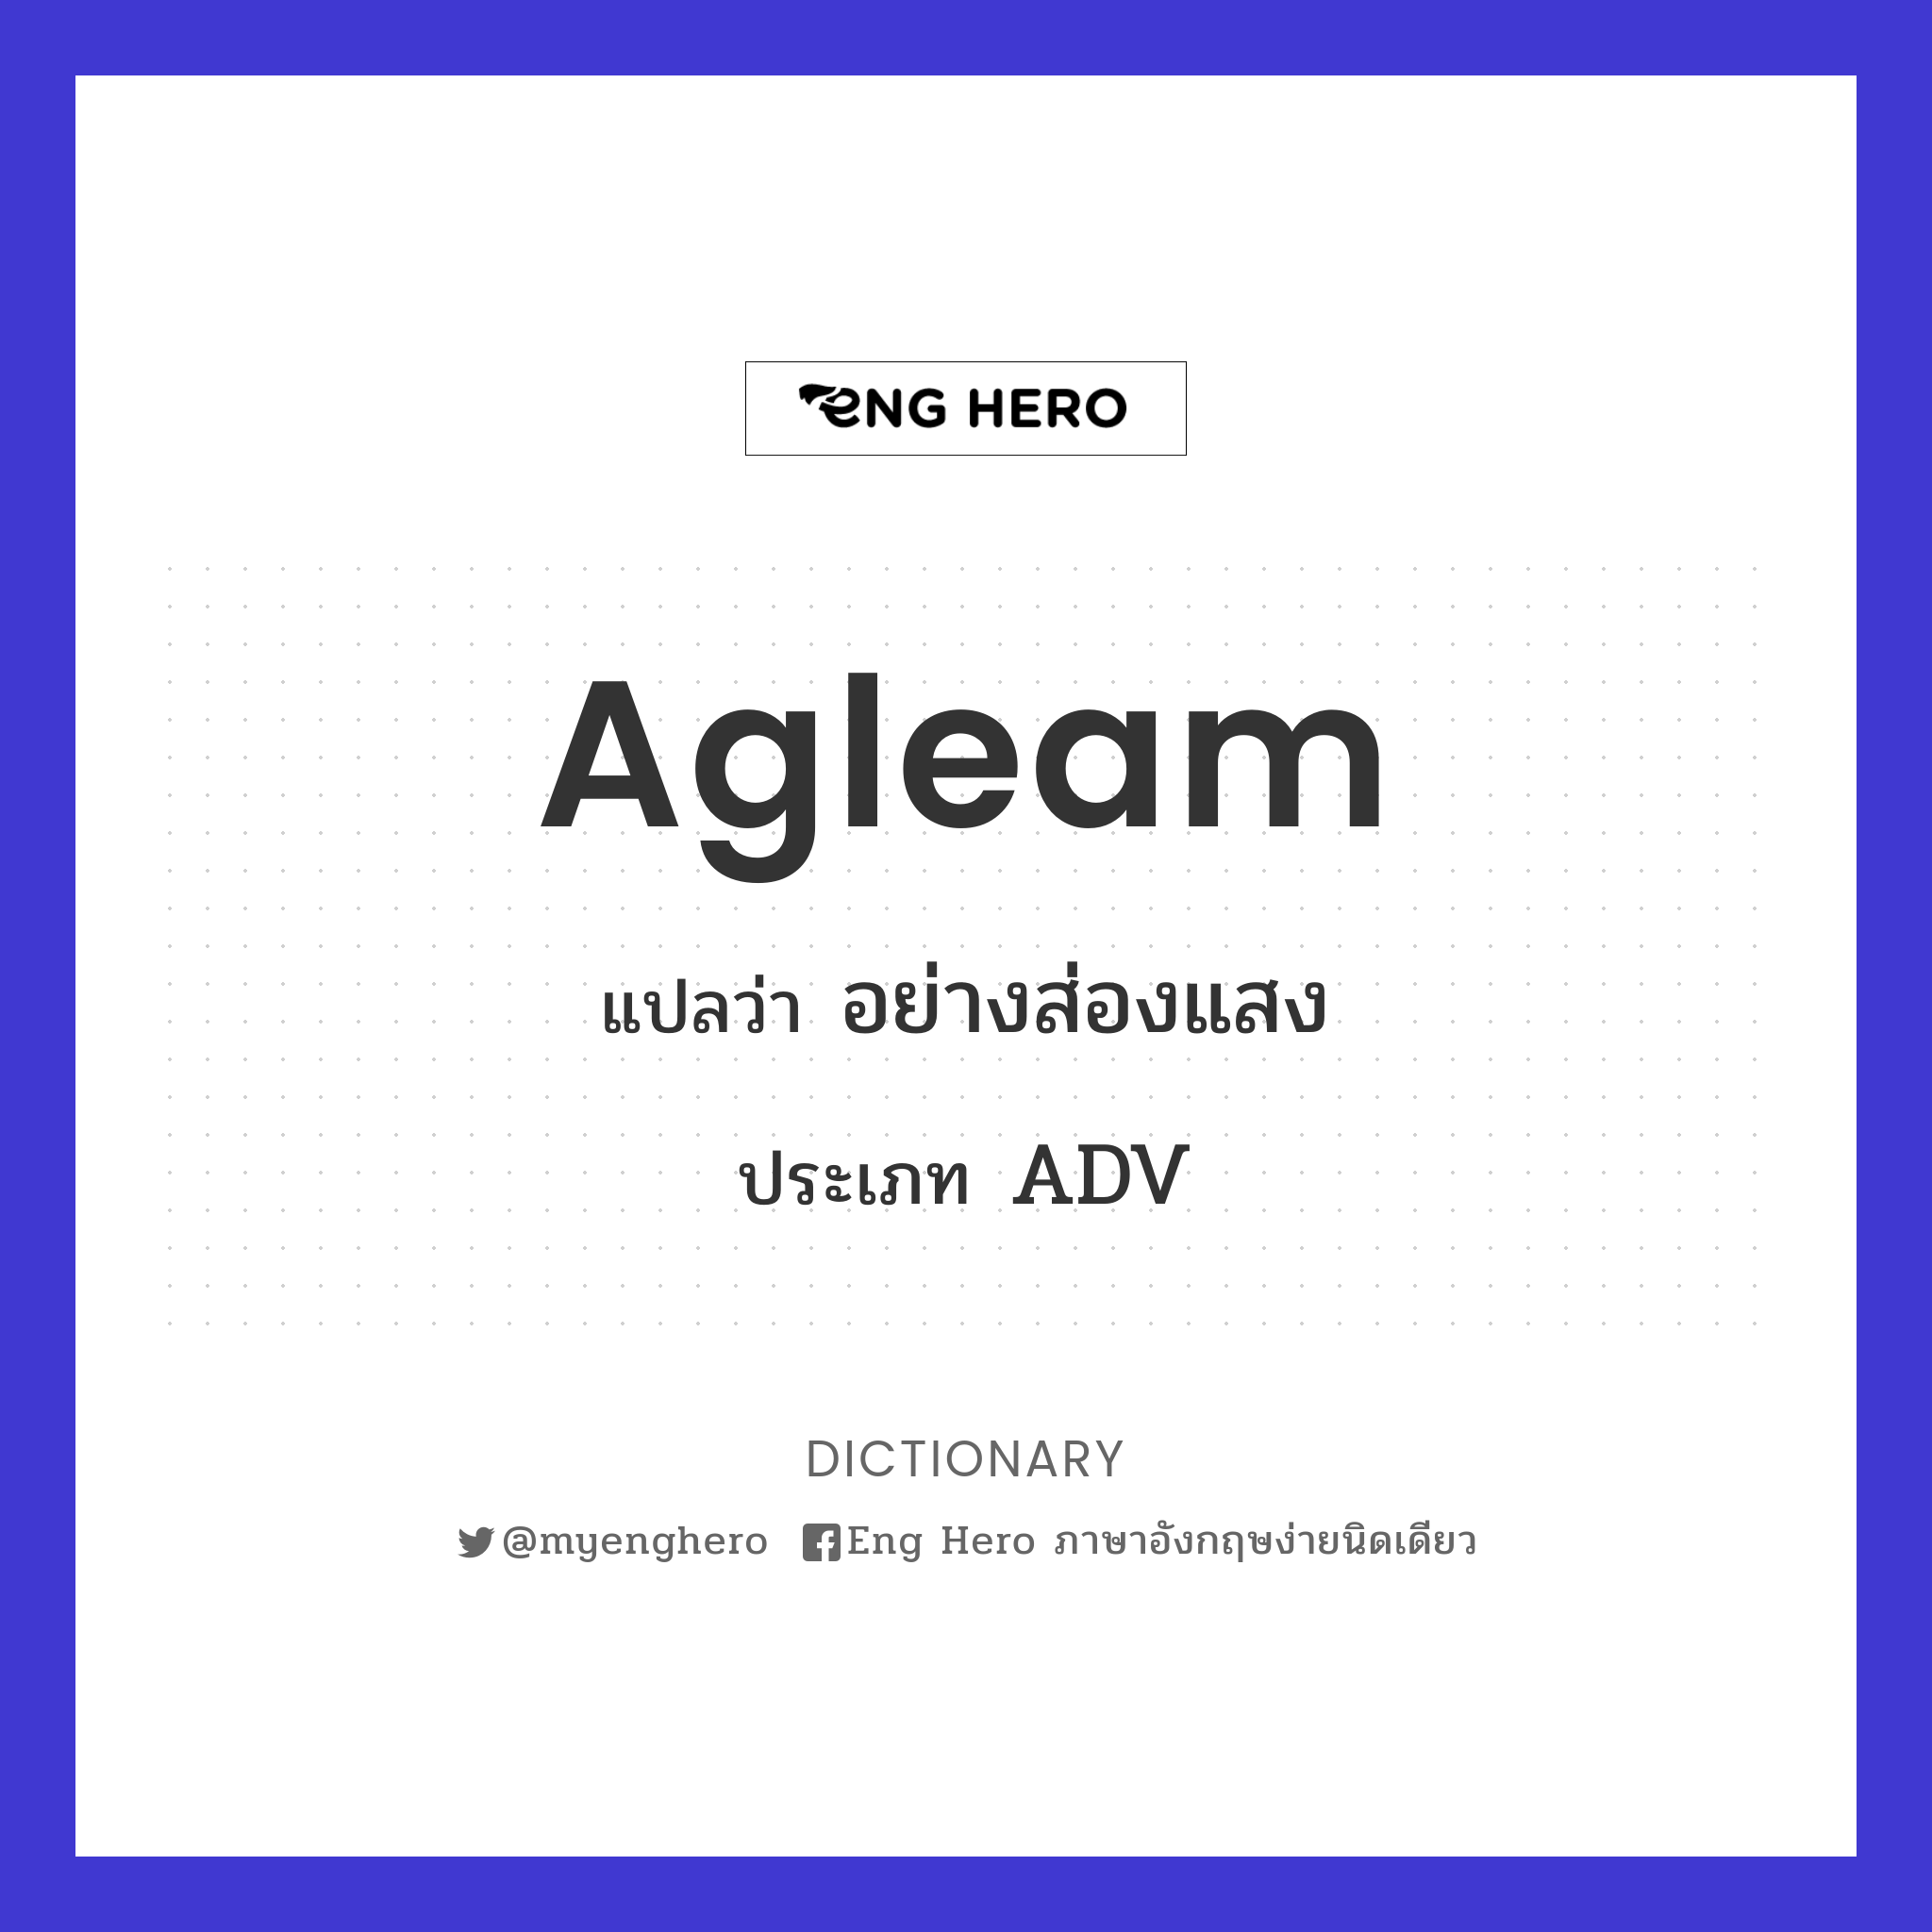 agleam